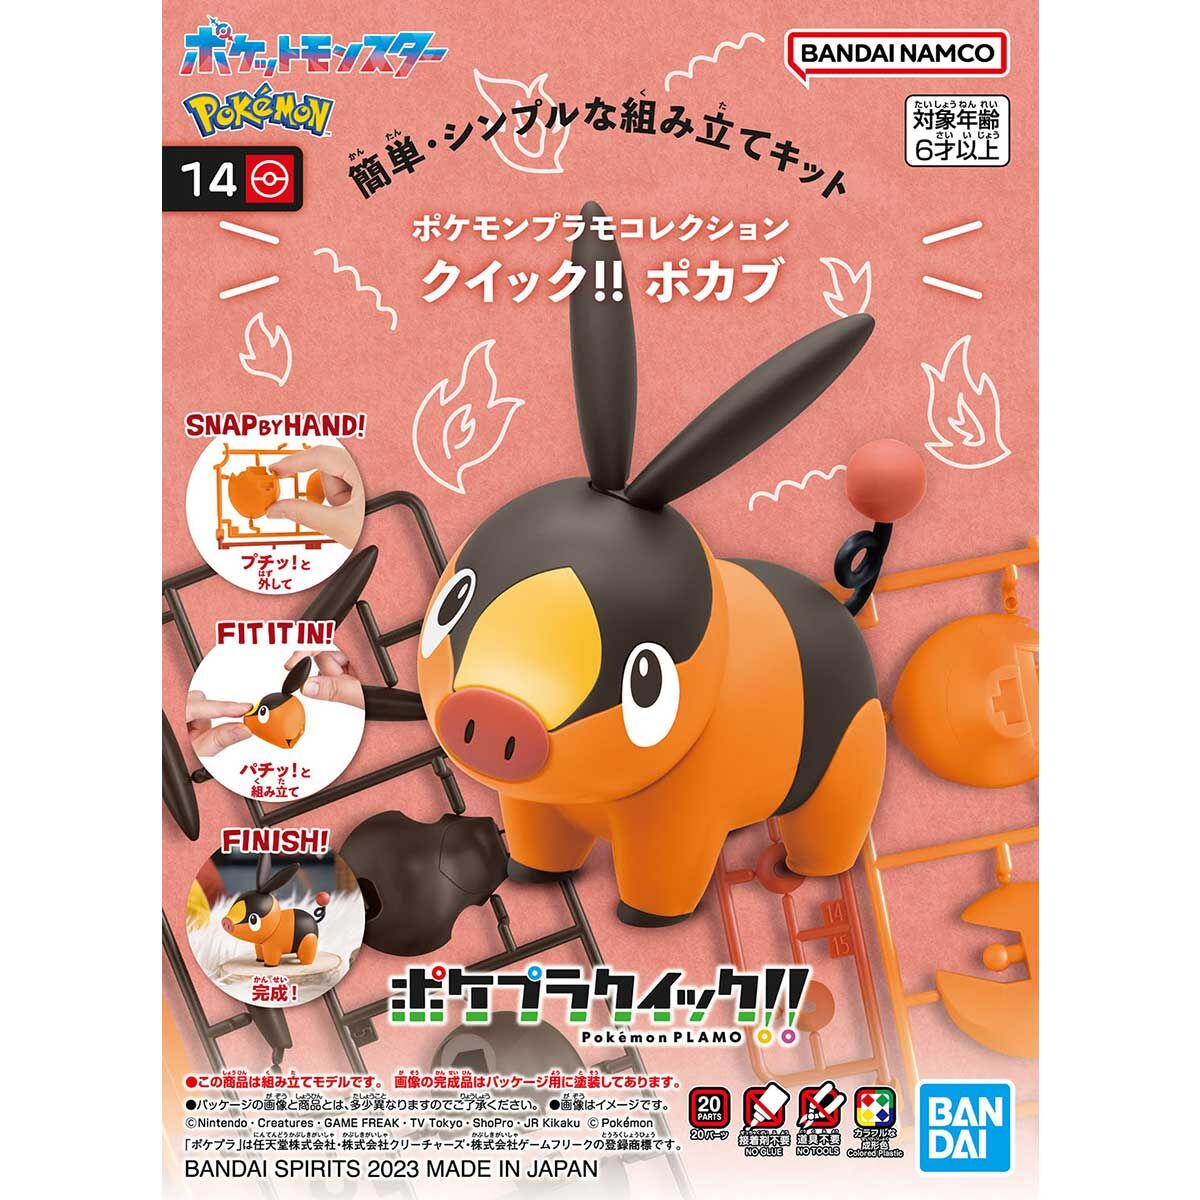 BANDAI Pokémon PLAMO 收藏集 快組版!! 14 暖暖豬 神奇寶貝寶可夢 貨號5065318